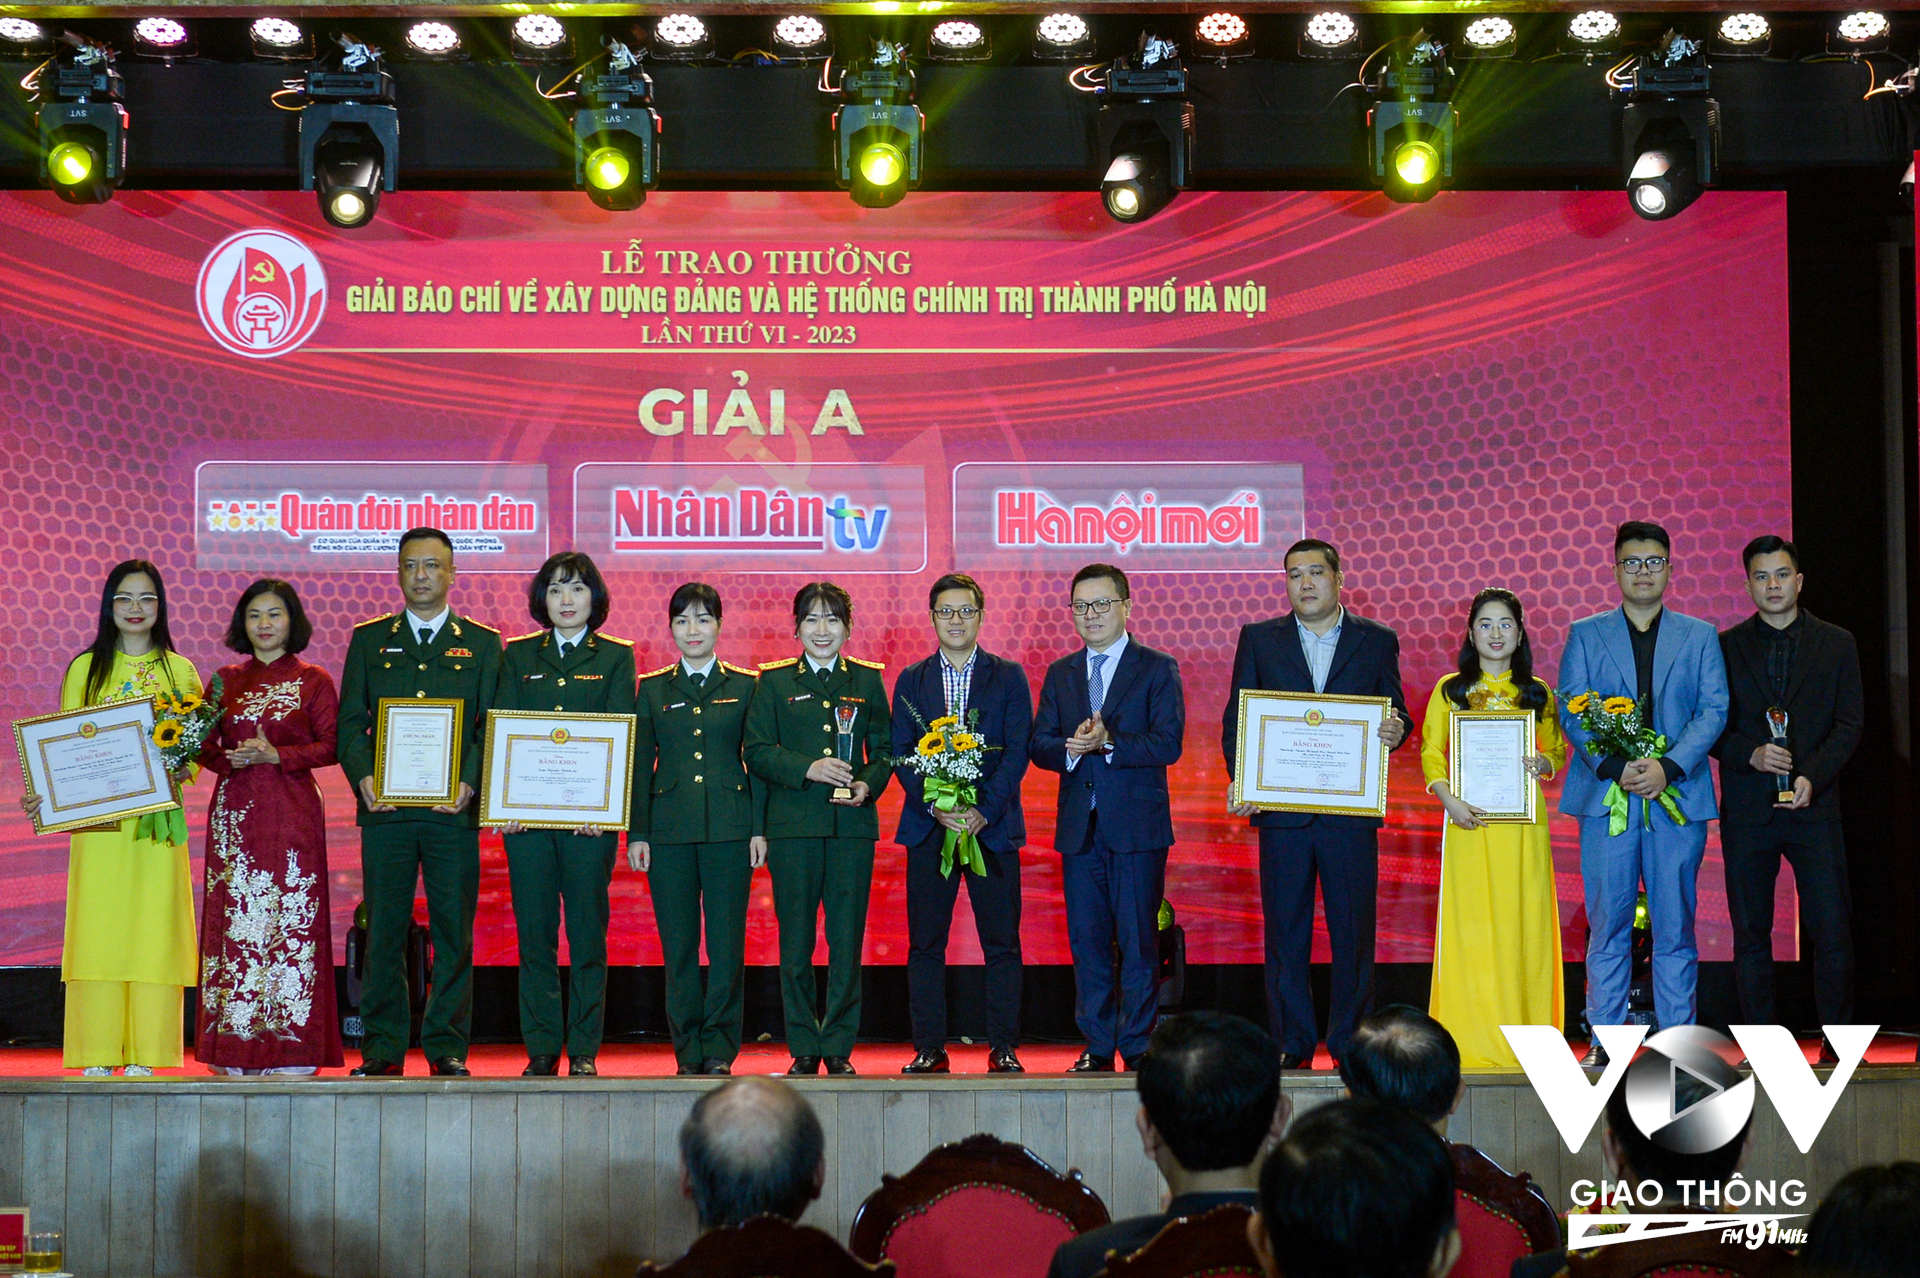 Lễ trao Giải báo chí về Xây dựng Đảng và hệ thống chính trị TP Hà Nội lần thứ VI - năm 2023.